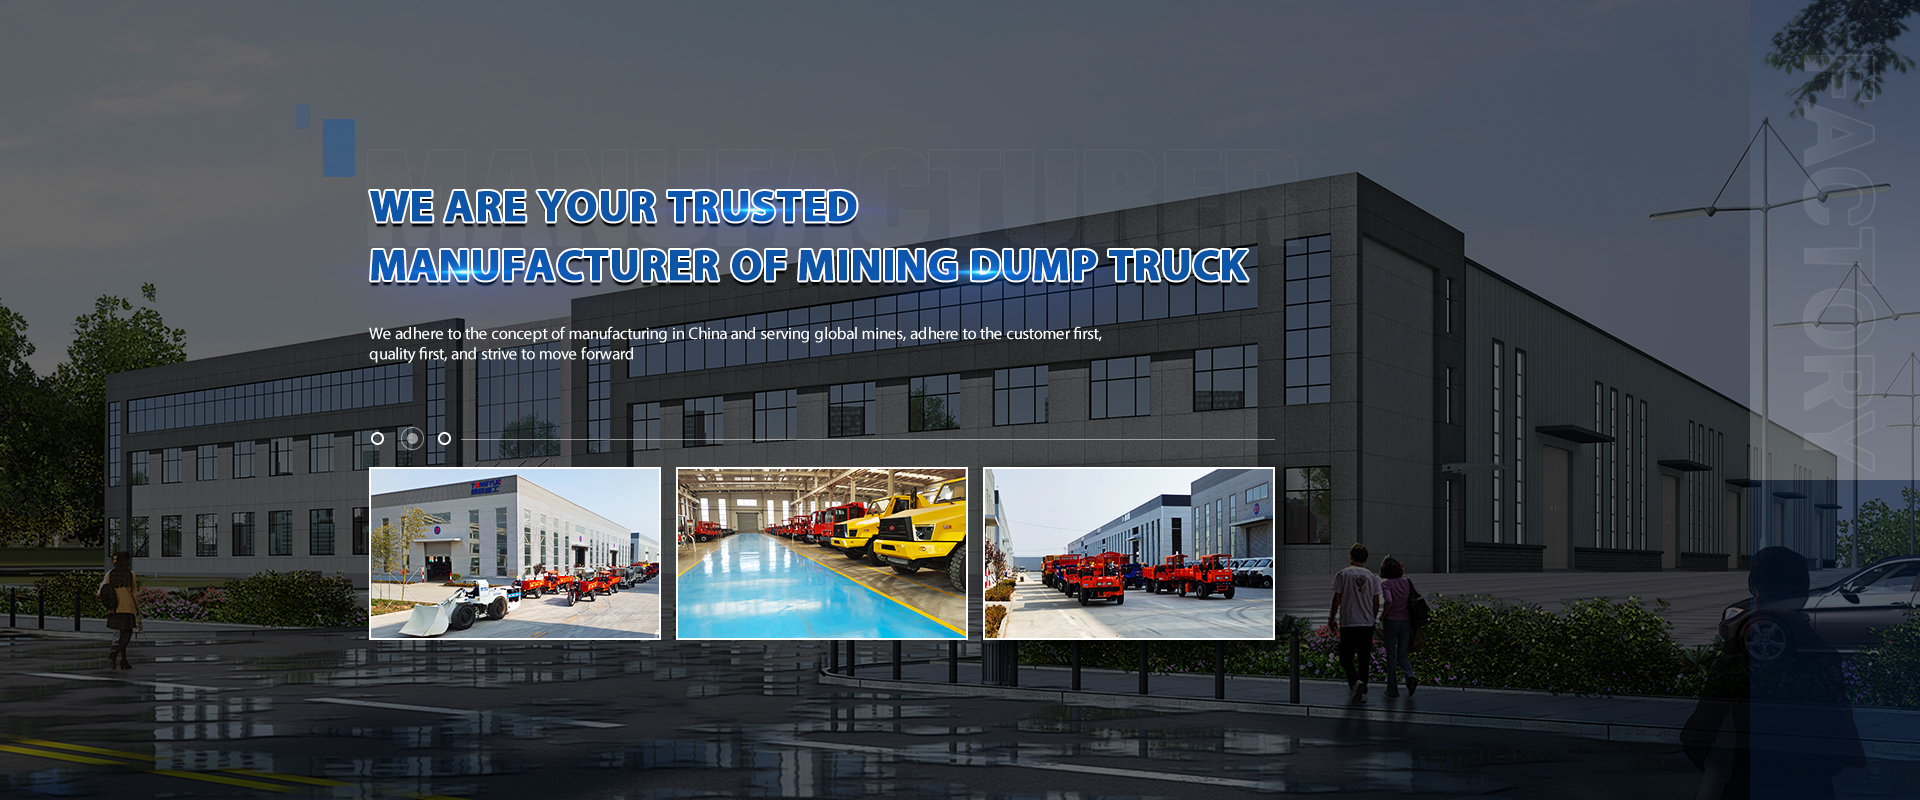 Coal Mine Haul Truck, Massive Mining Truck, Gold Mining Trucks - TYMG